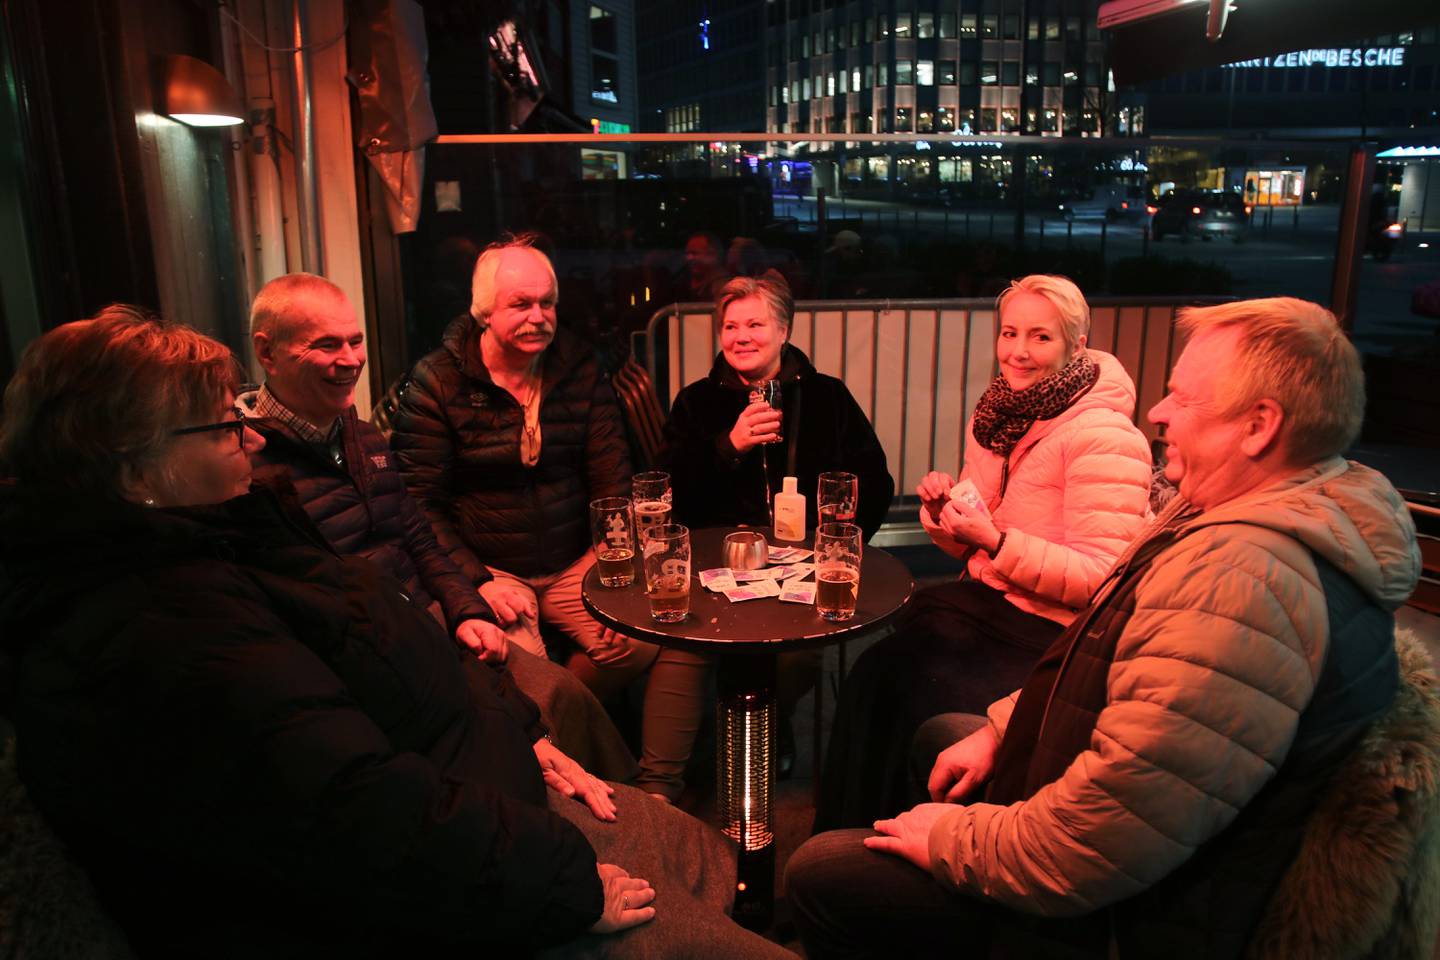 Fra venstre: Målfrid Kovland, Jan Gunnar Eikehaug, Arild Arnvard, Anita Arnvard, Randi Eikehaug og Leif Rønning. De gode vennene har tatt turen til Stavanger i helgen.